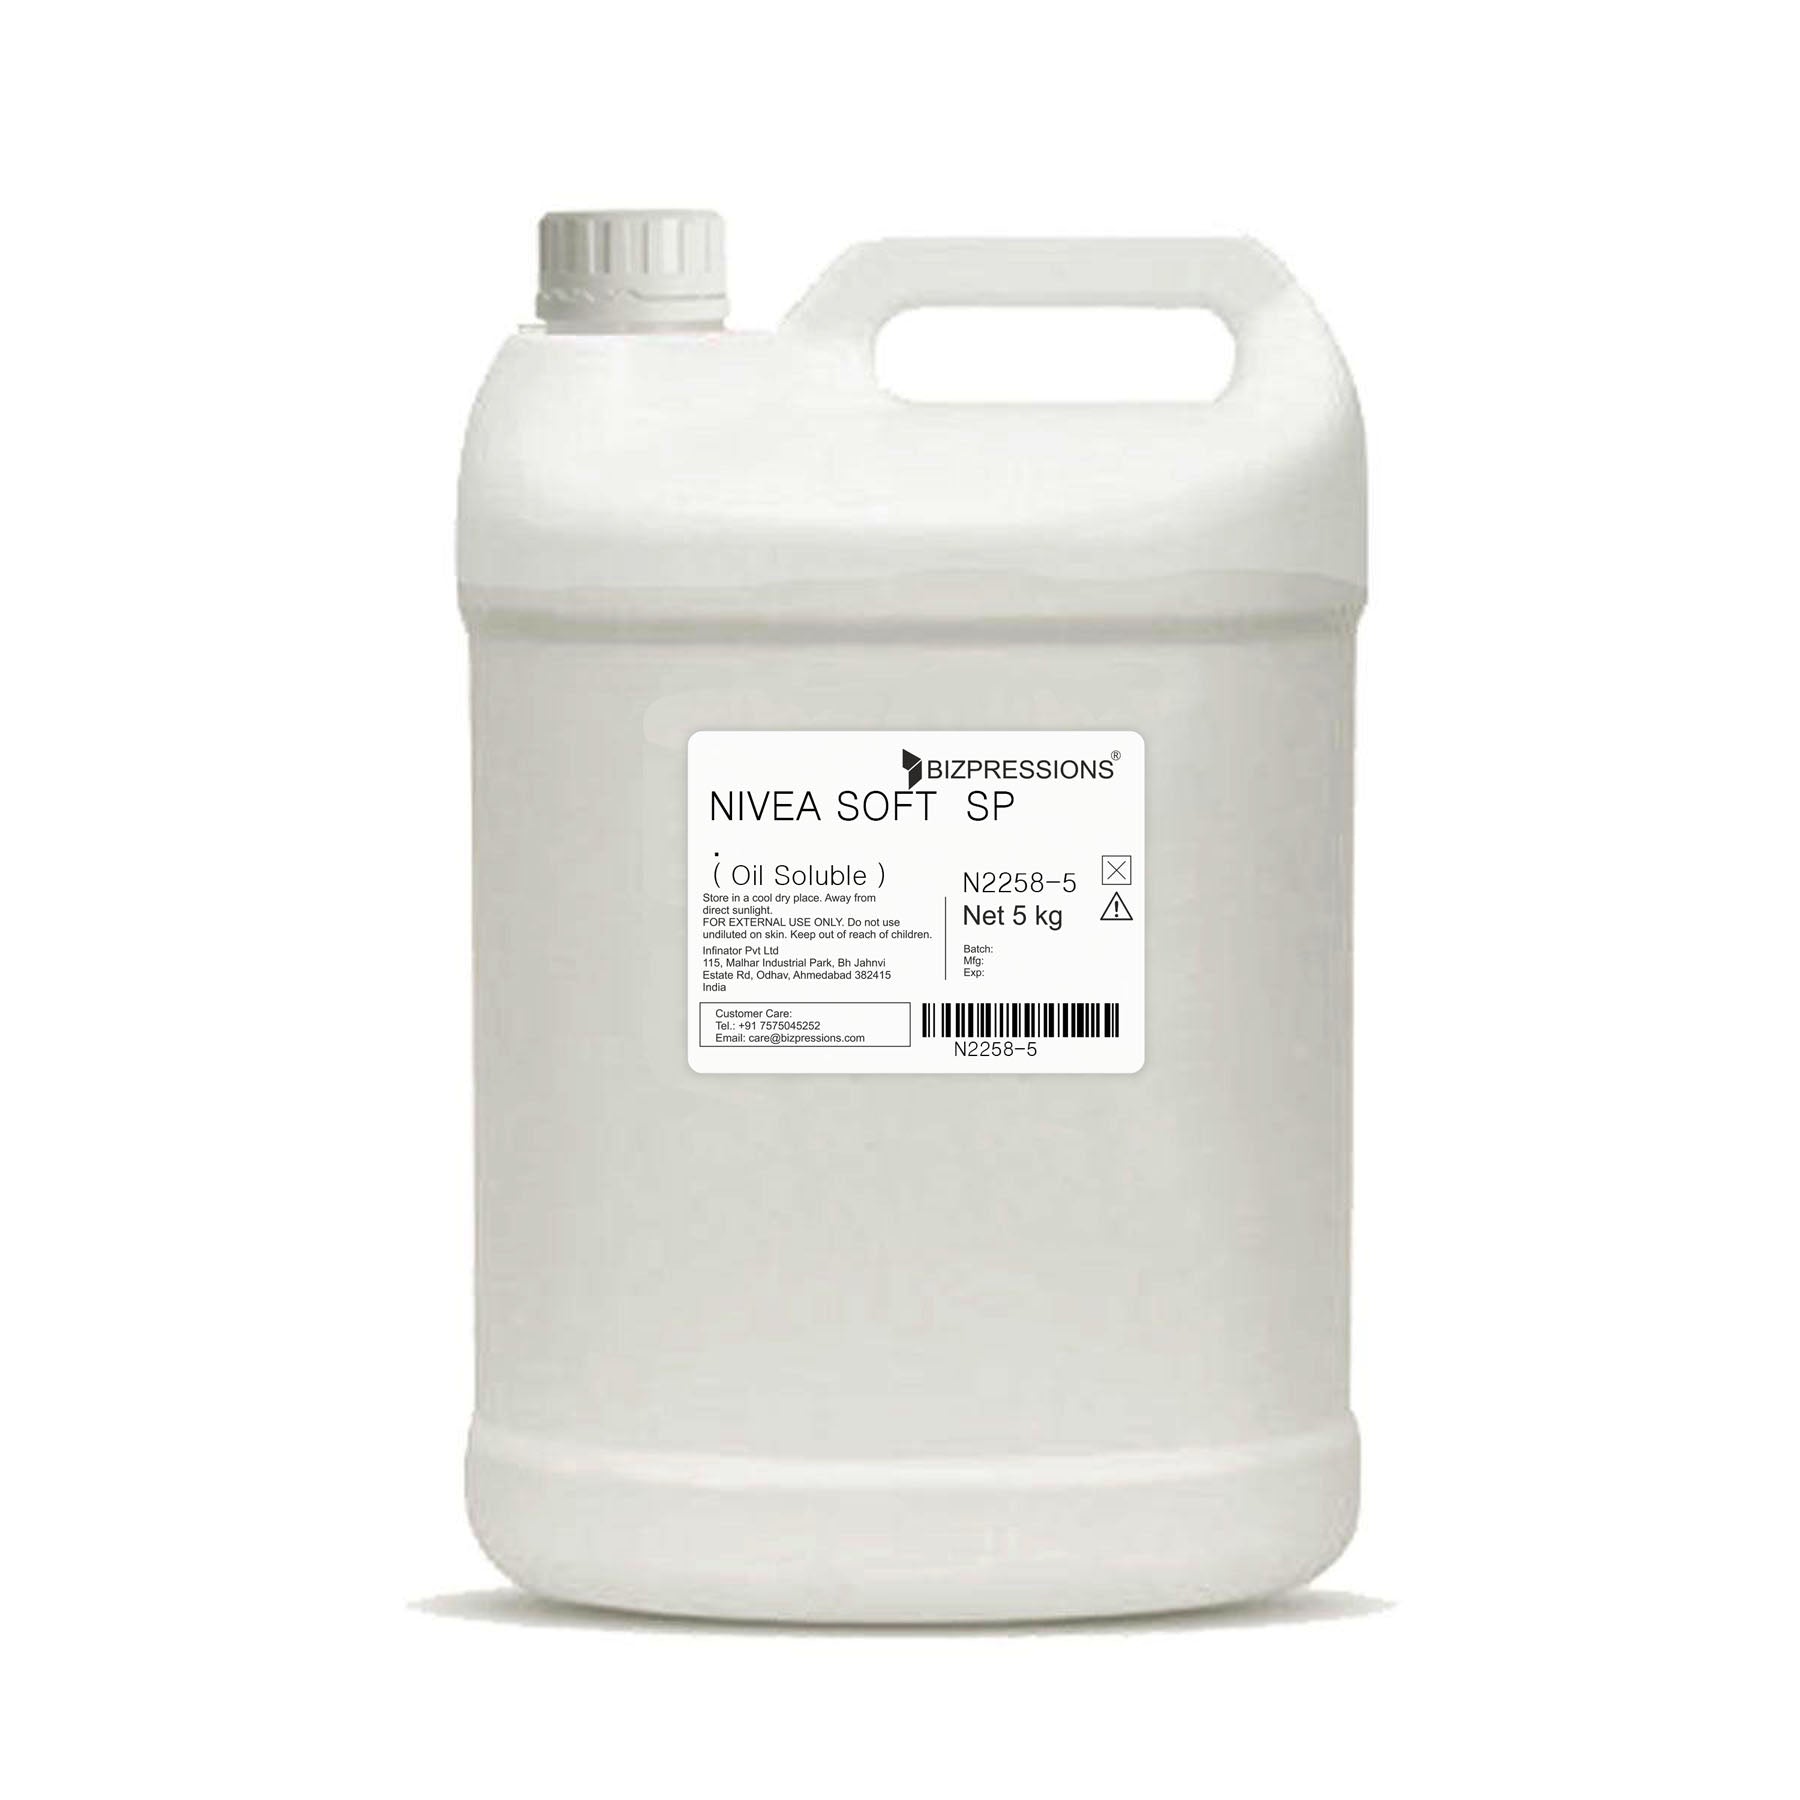 NIVEA SOFT SP. - Fragrance ( Oil Soluble ) - 5 kg